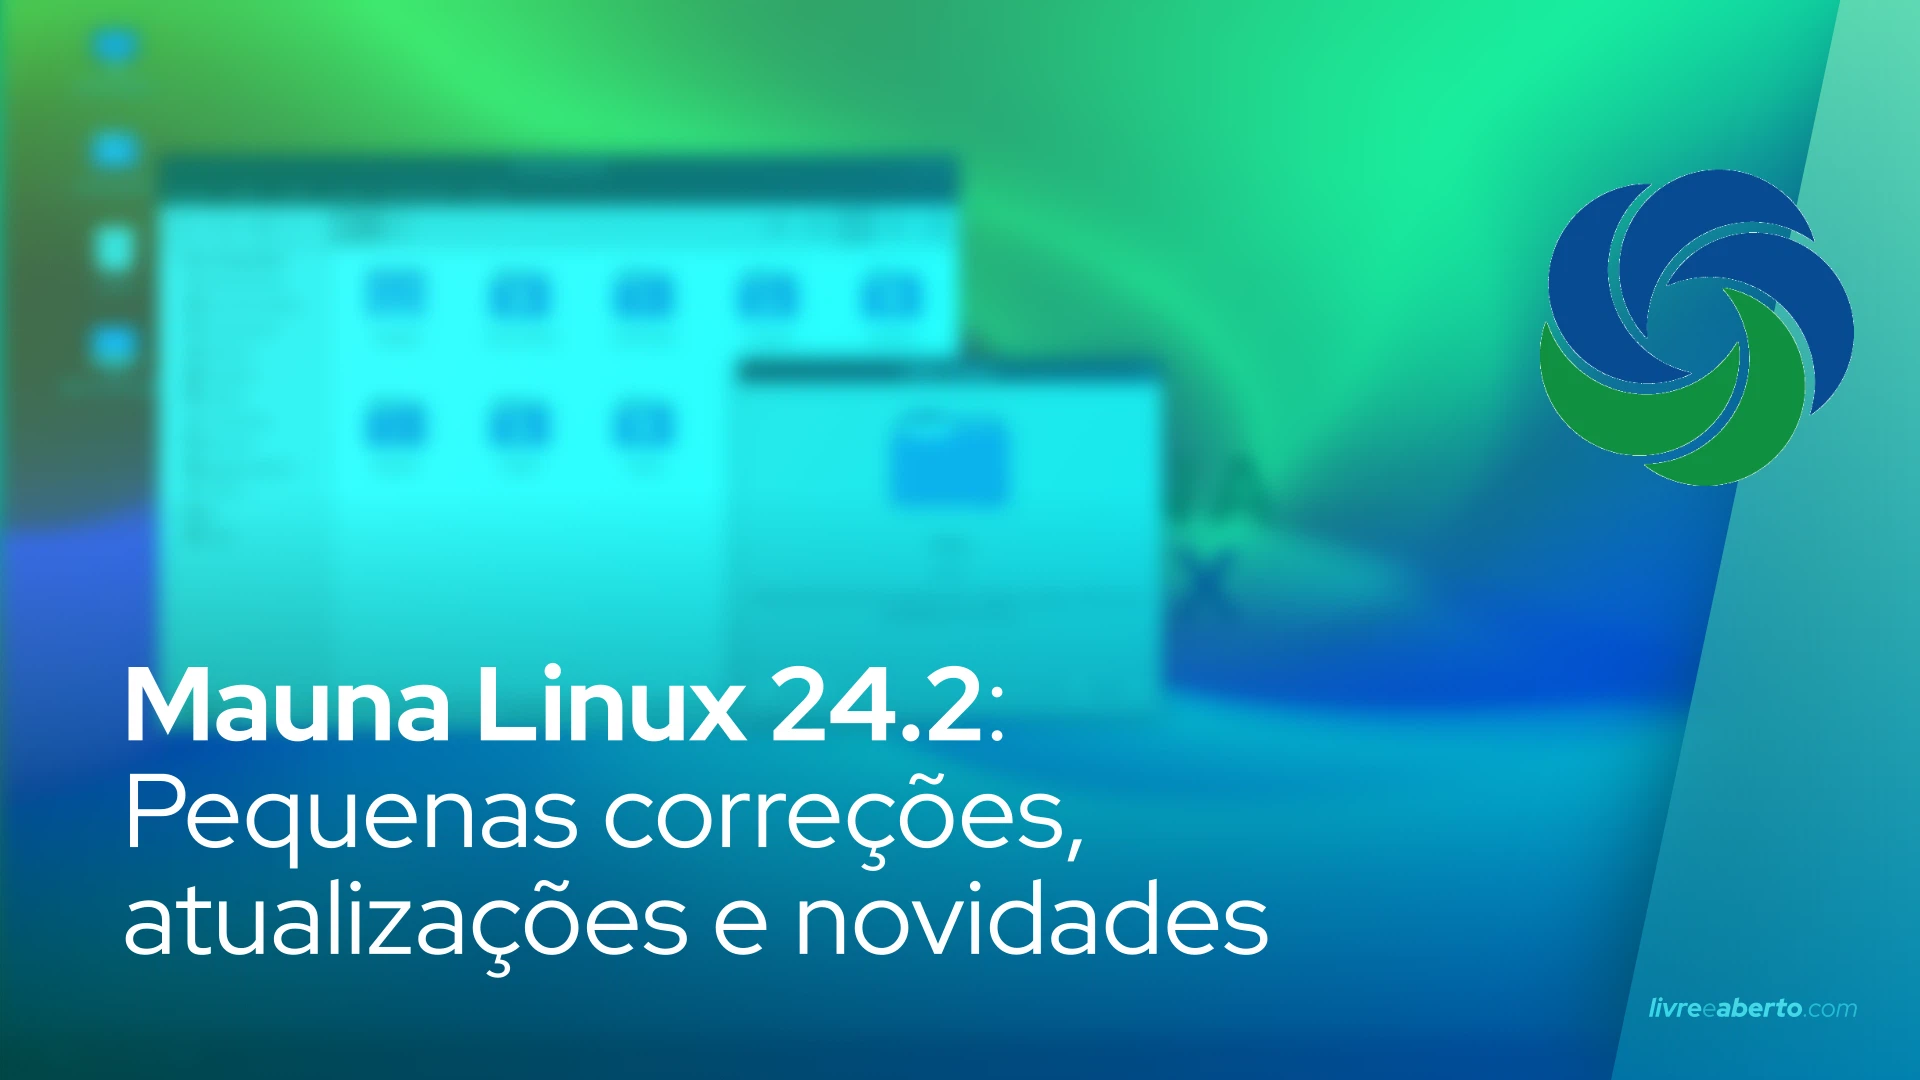 Mauna Linux 24.2: Pequenas correções, atualizações e novidades